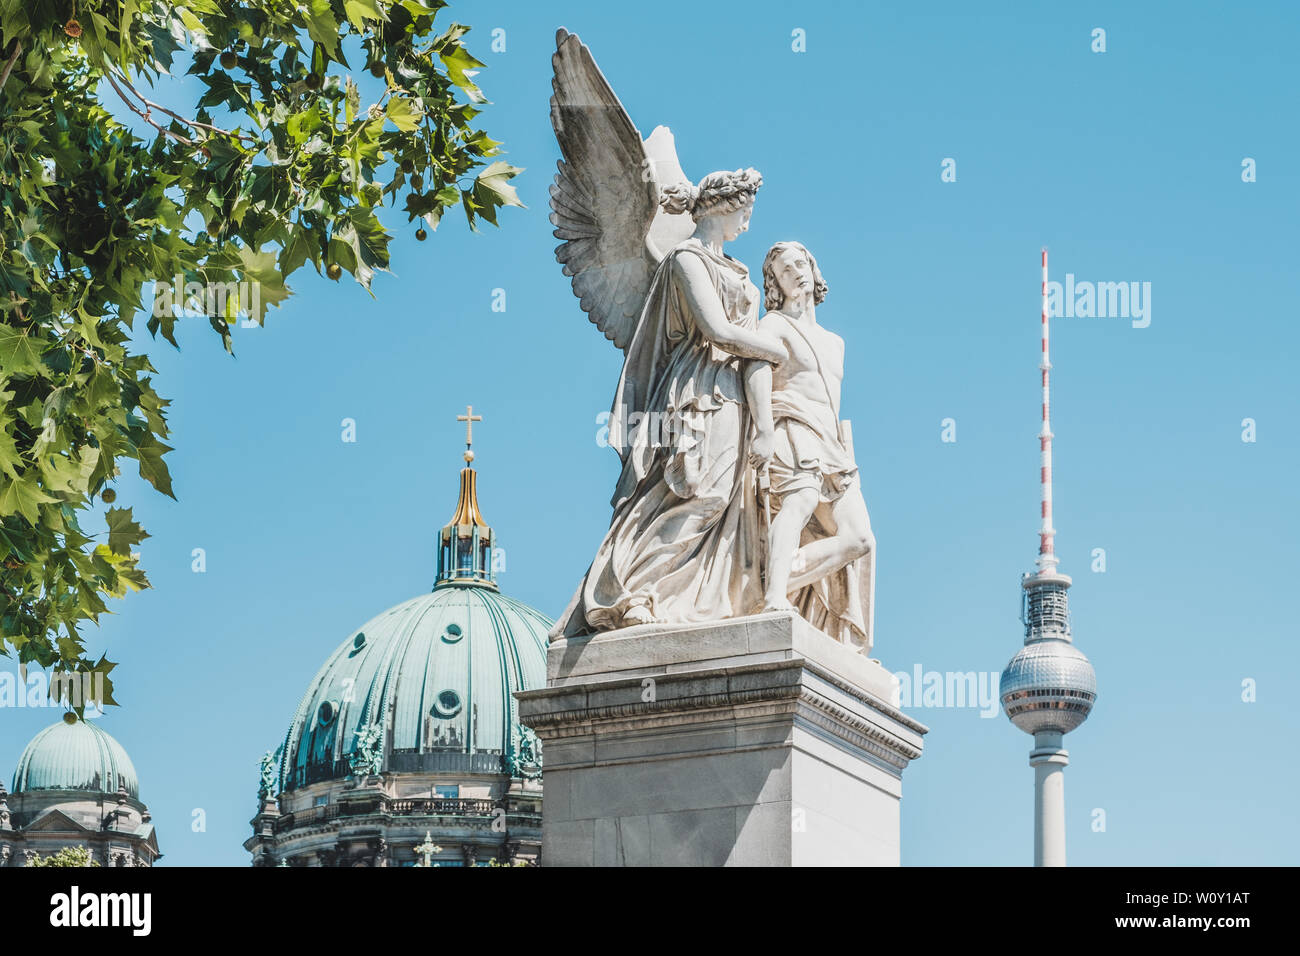 Berlin, Deutschland - Juni, 2019: Die Statue Nike die verwundeten Krieger mit Fernsehturm (Fernsehturm) und der Berliner Dom im Hintergrund unterstützt Stockfoto